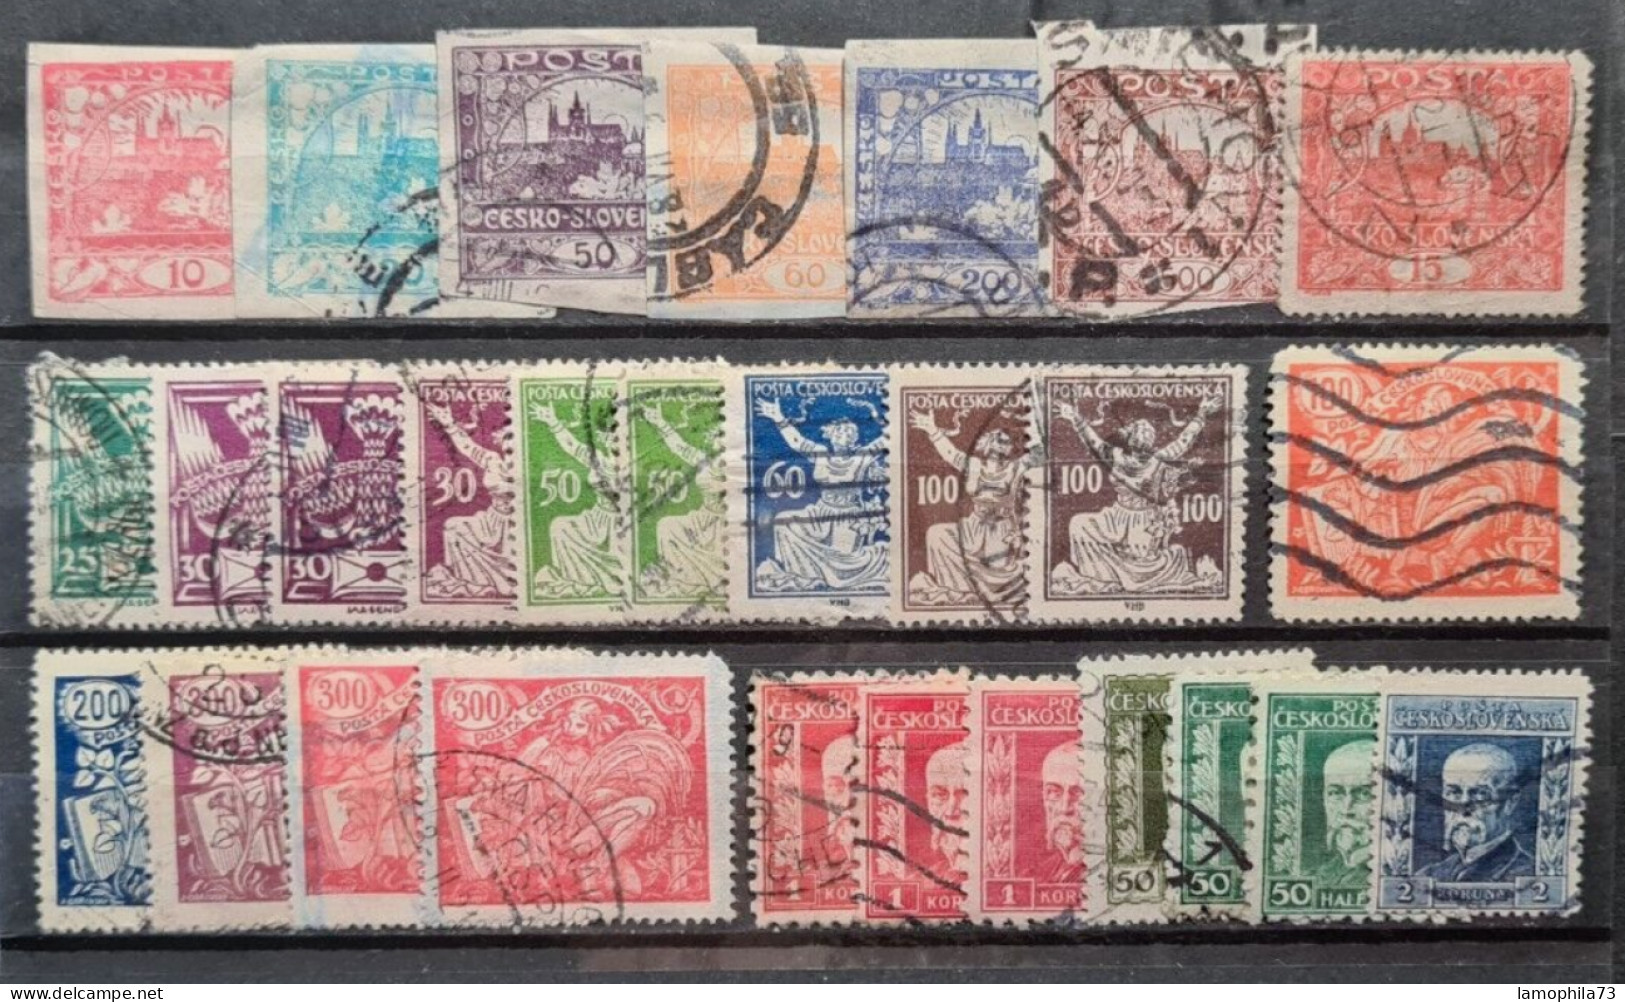 Tchecoslovakia - Stamp(s) G/V-Good - (O) - 1 Scan(s) Réf-1730 - Oblitérés